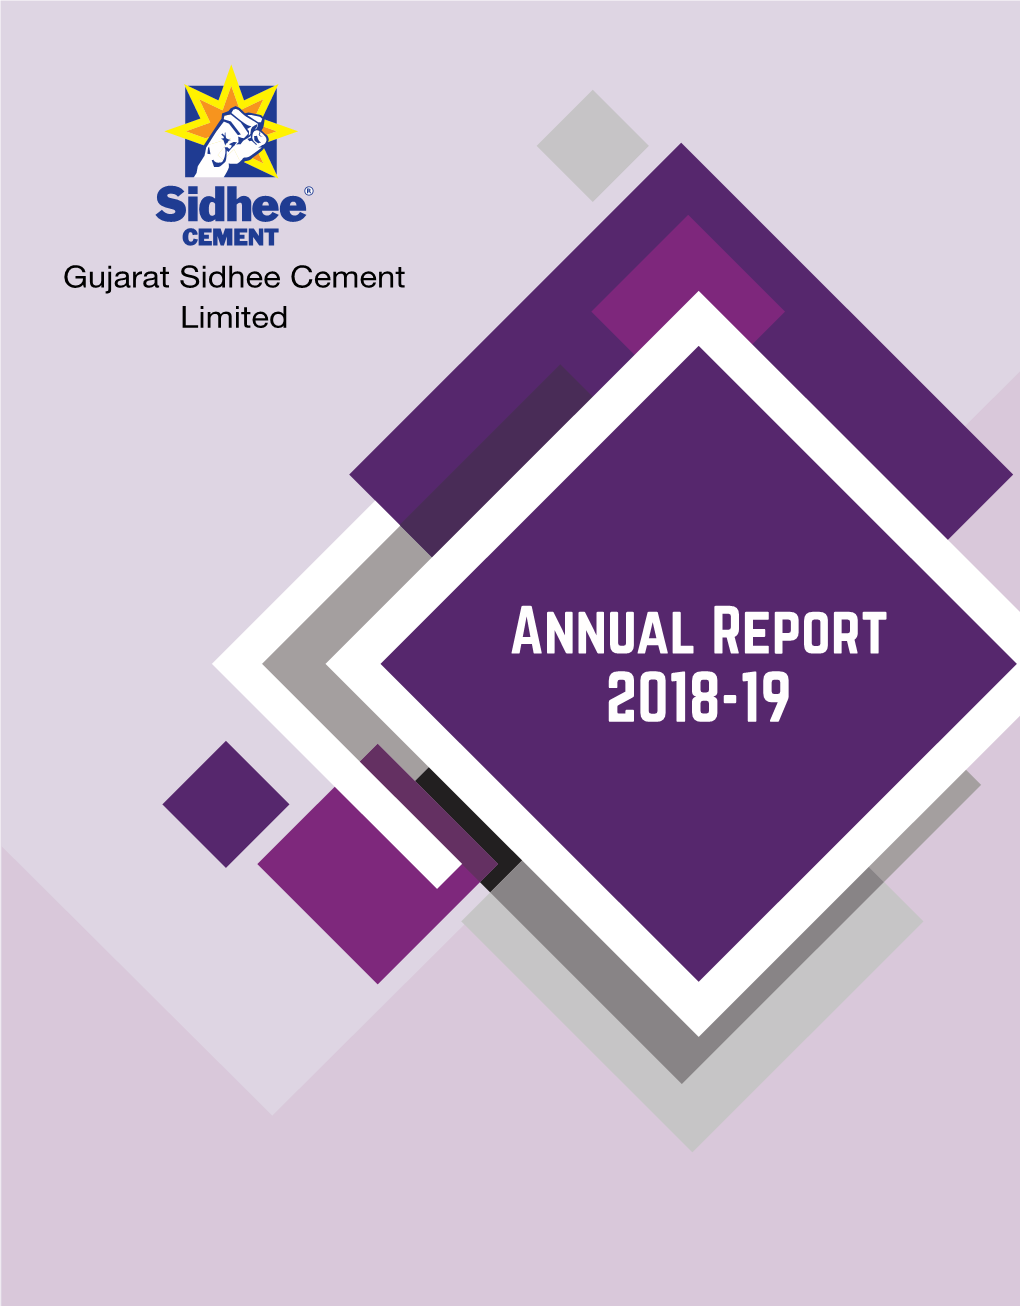 Annual Report 2018-19 45Th ANNUAL REPORT 2018-19